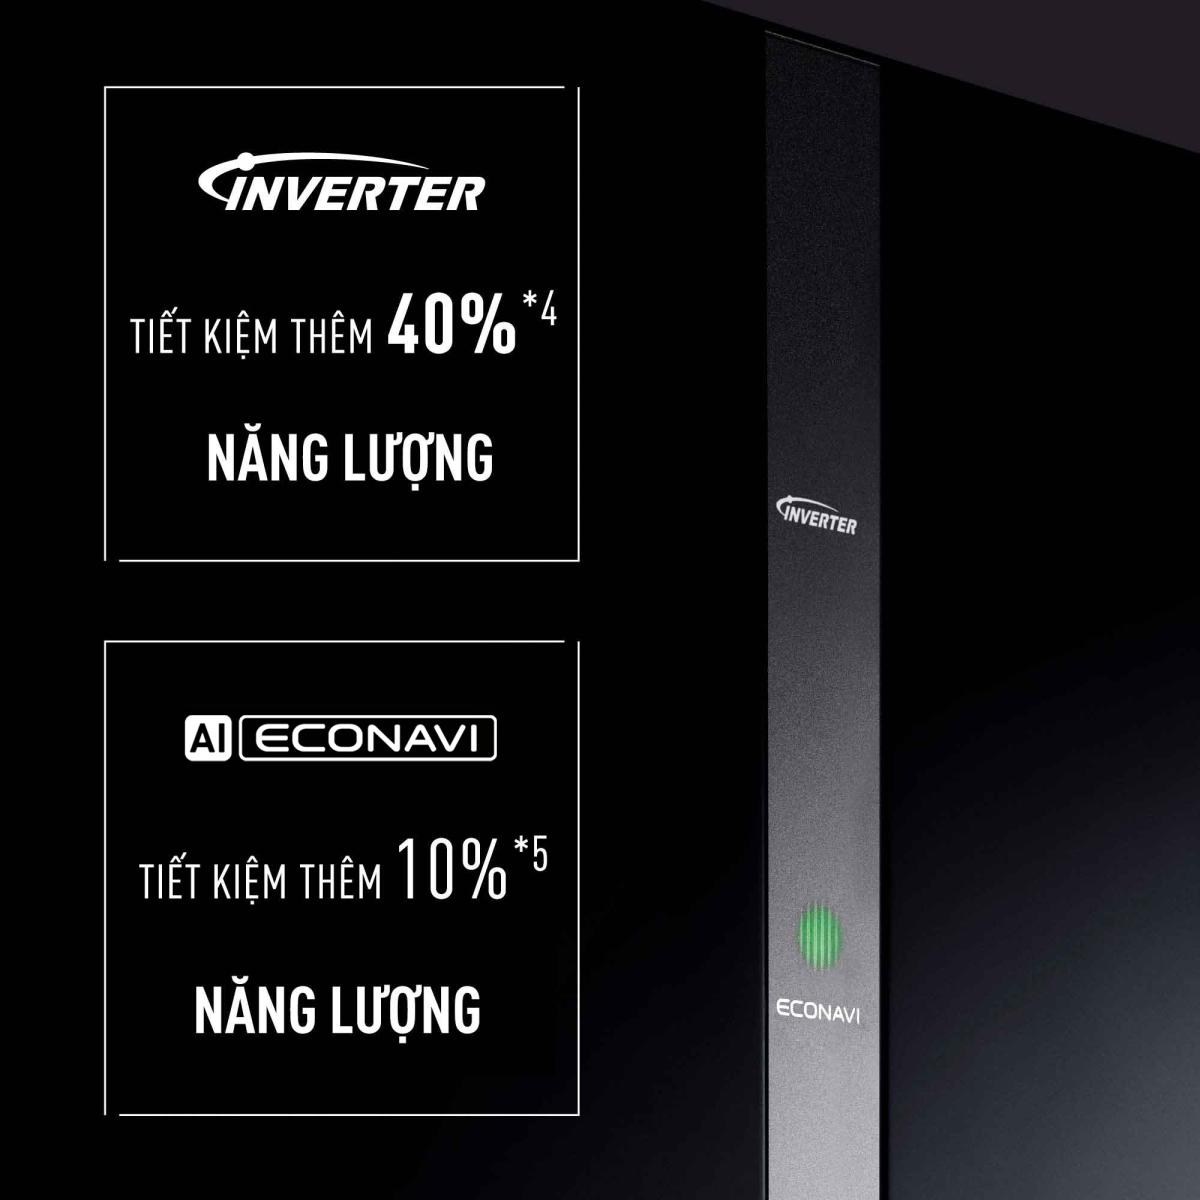 Tủ Lạnh NR-BX471WGKV được tích hợp công nghệ Inverter và ECONAVI